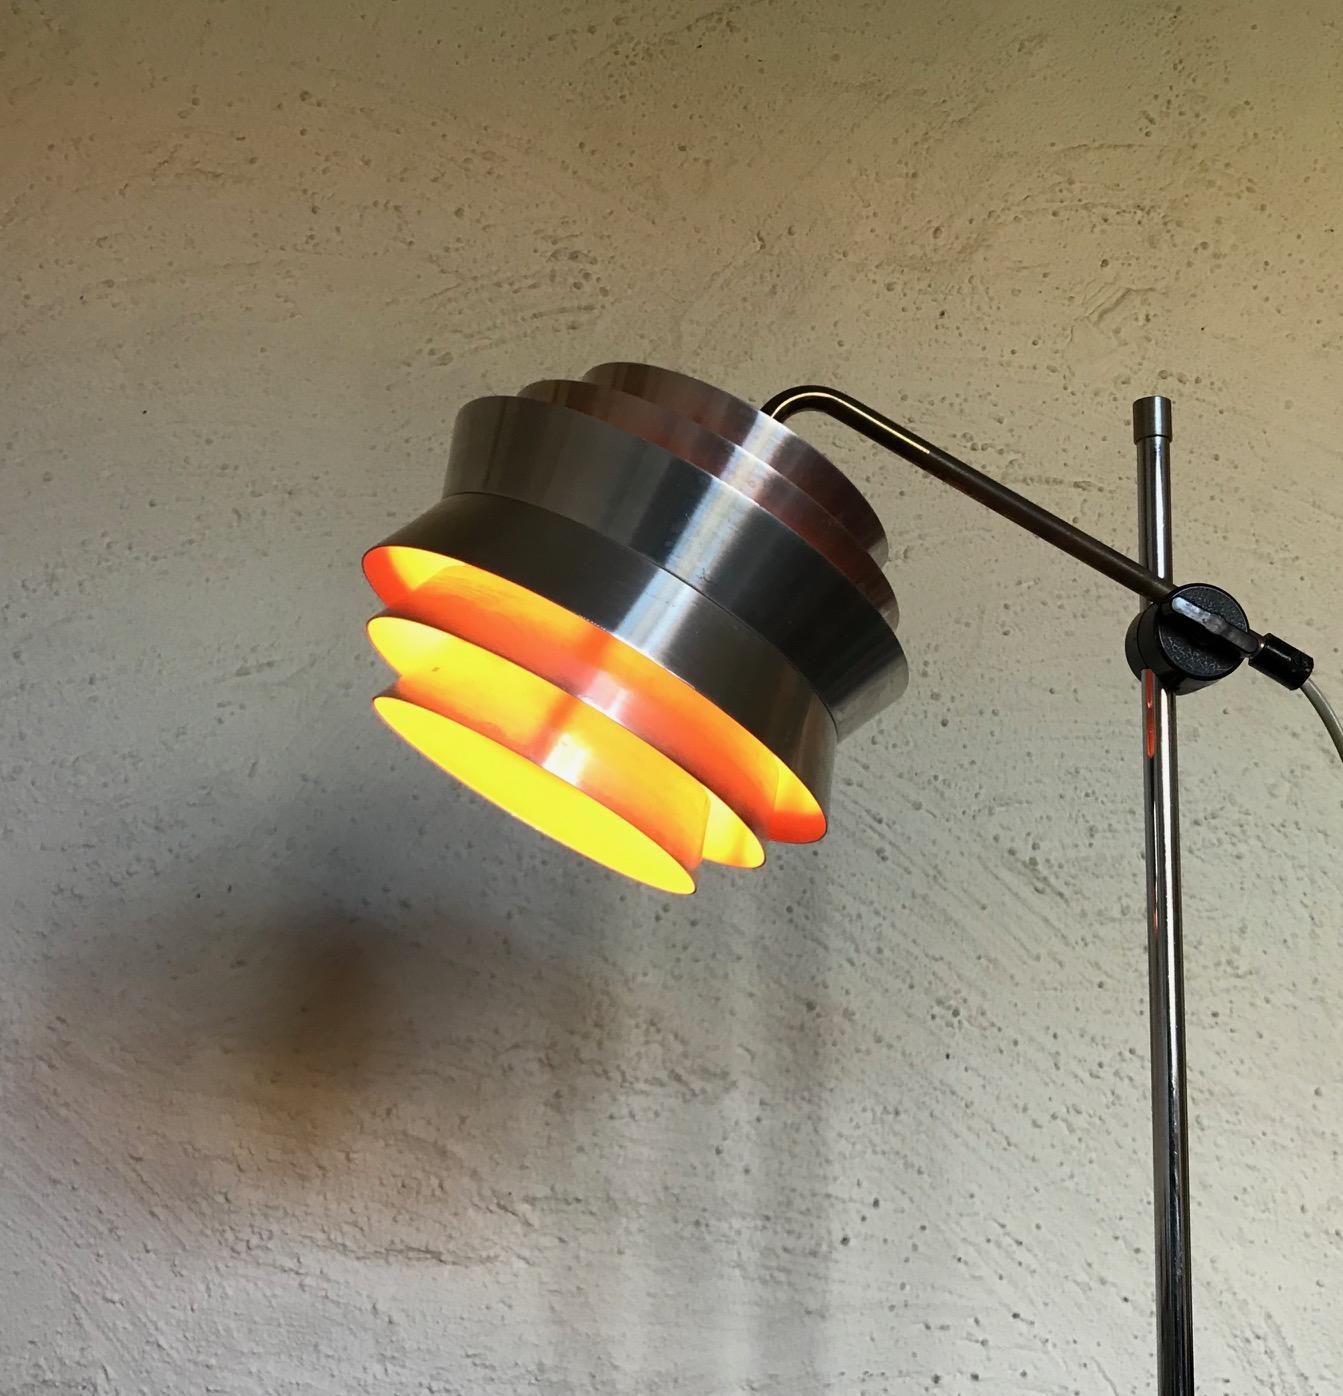 Il s'agit d'un lampadaire entièrement réglable composé d'une tige en acier chromé, d'un support d'abat-jour en laiton et d'un abat-jour et d'une base en aluminium brossé. Cette lampe appelée 